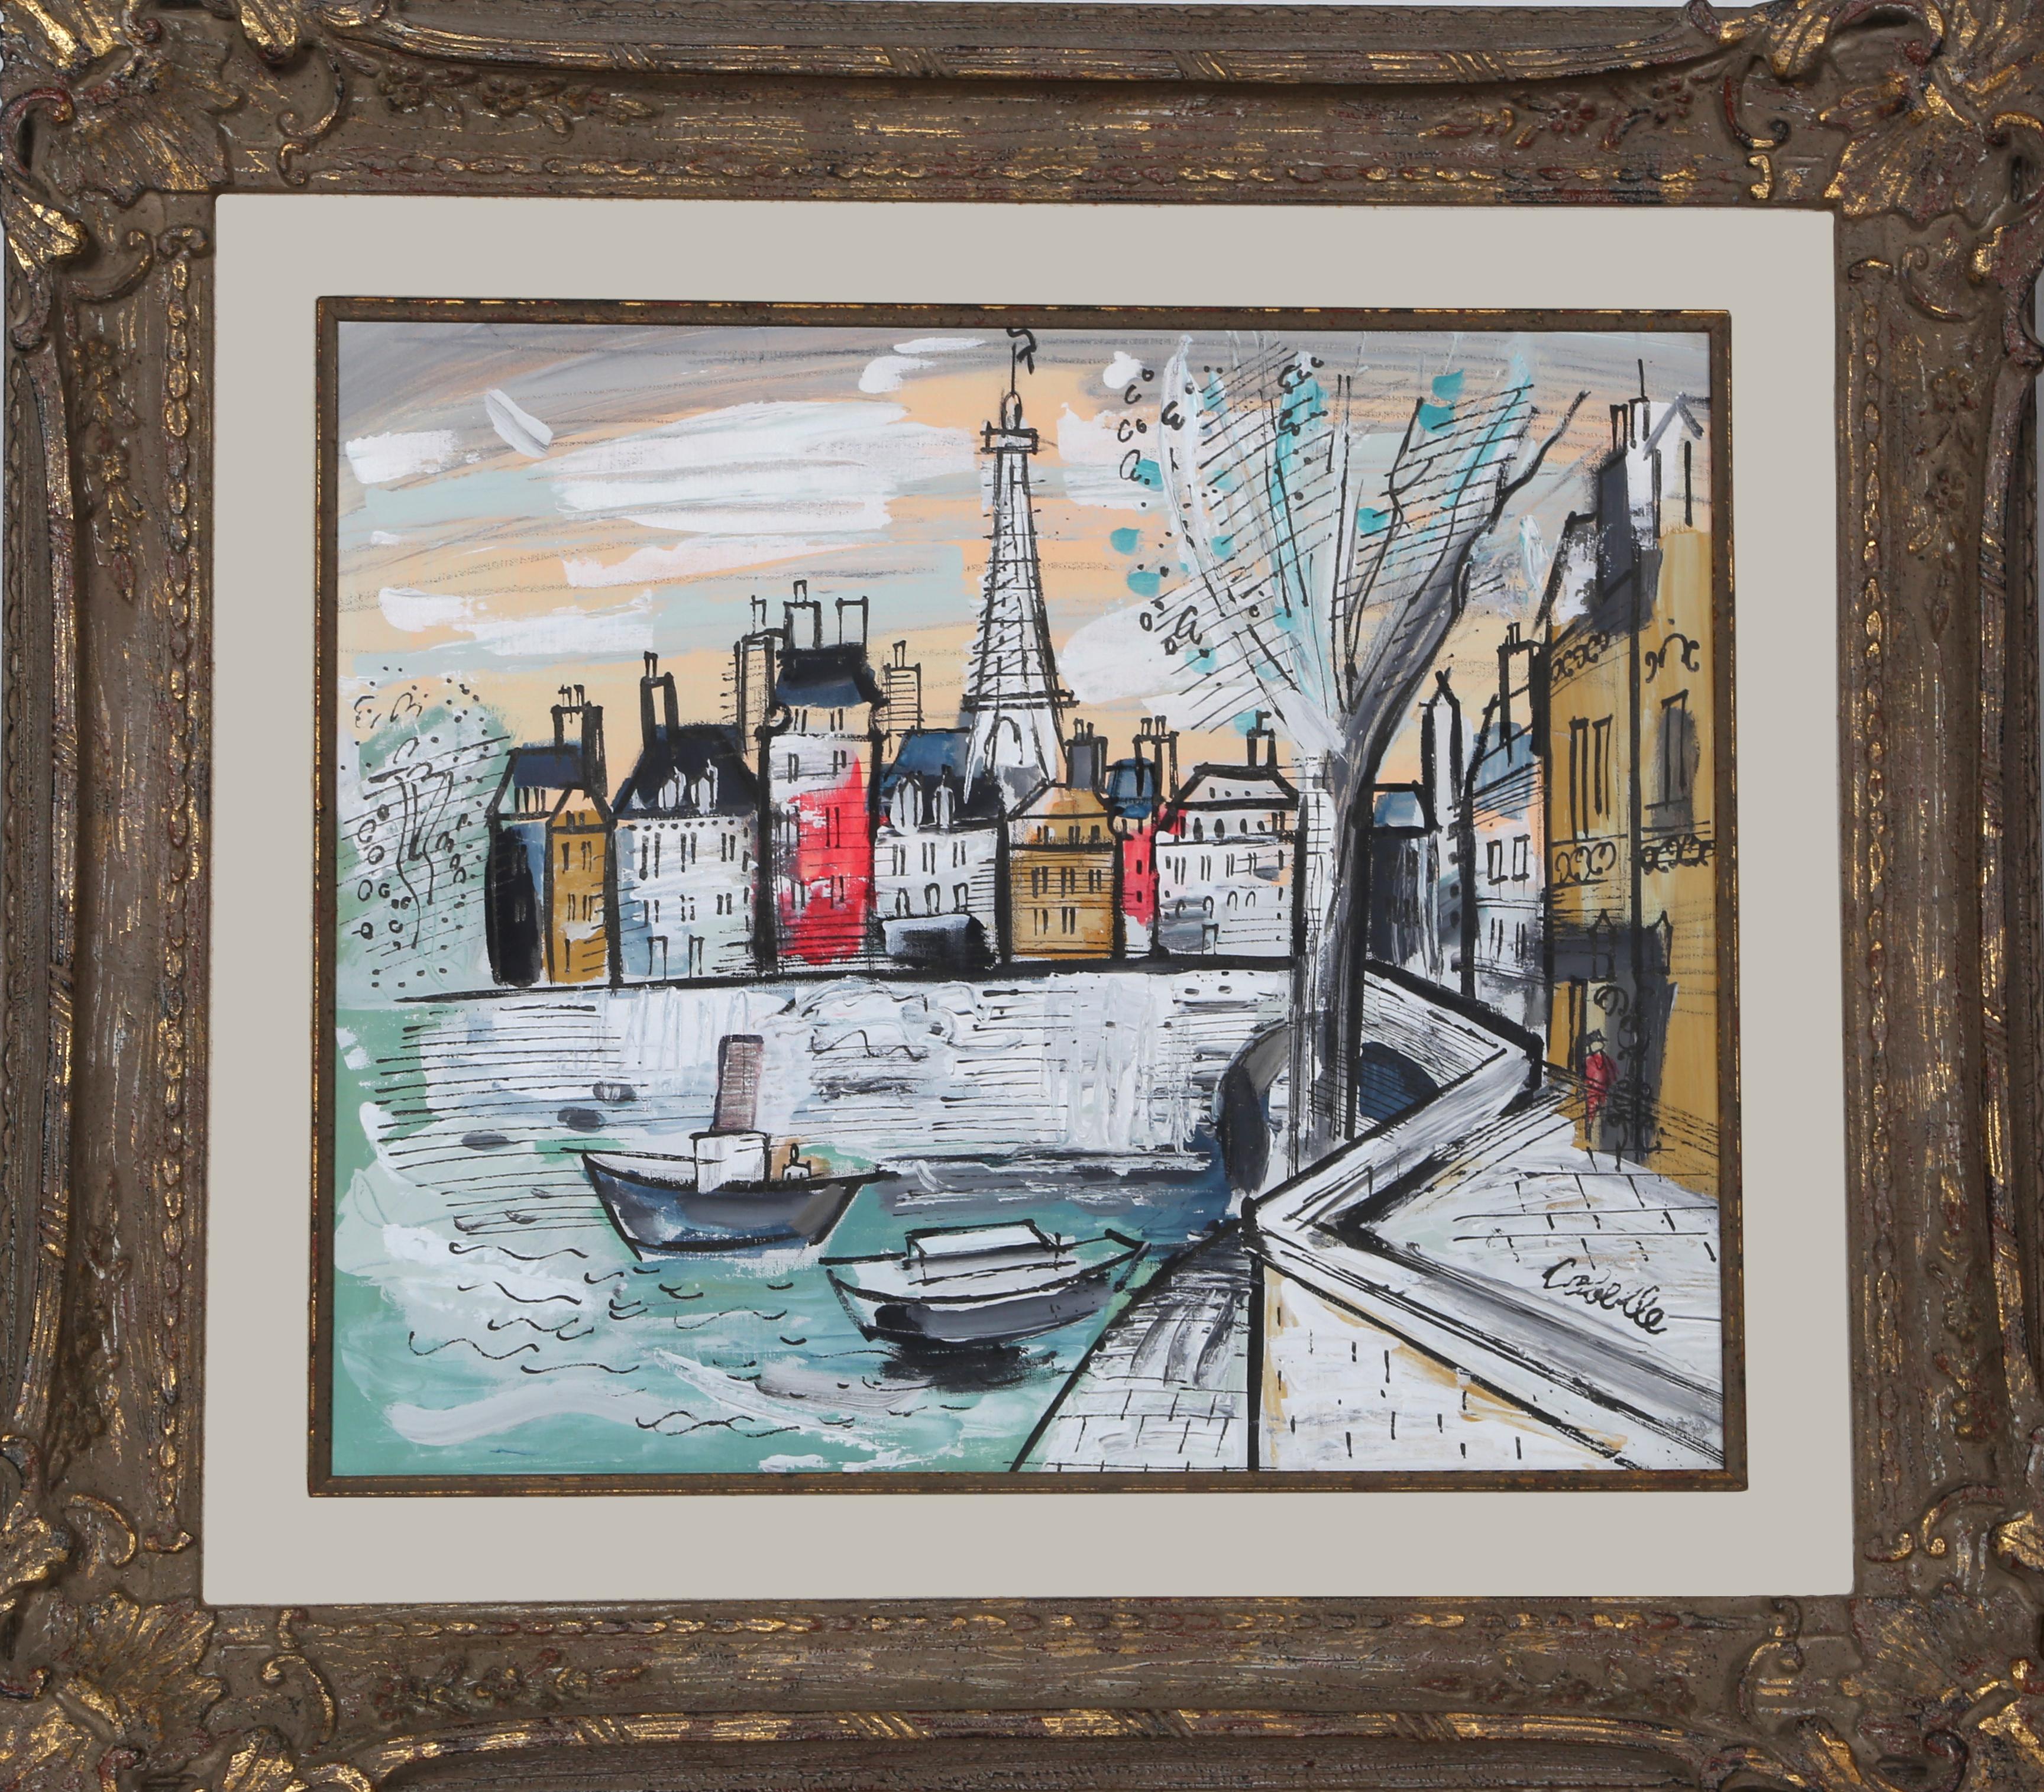 Künstler:  Charles Cobelle, Franzose (1902 - 1994)
Titel:  Eiffelturm
Jahr:  um 1966
Medium:  Acryl auf Leinwand auf Holz montiert, signiert
Größe:  20 x 24 in. (50,8 x 60,96 cm)
Rahmengröße:  31 x 35 Zoll

